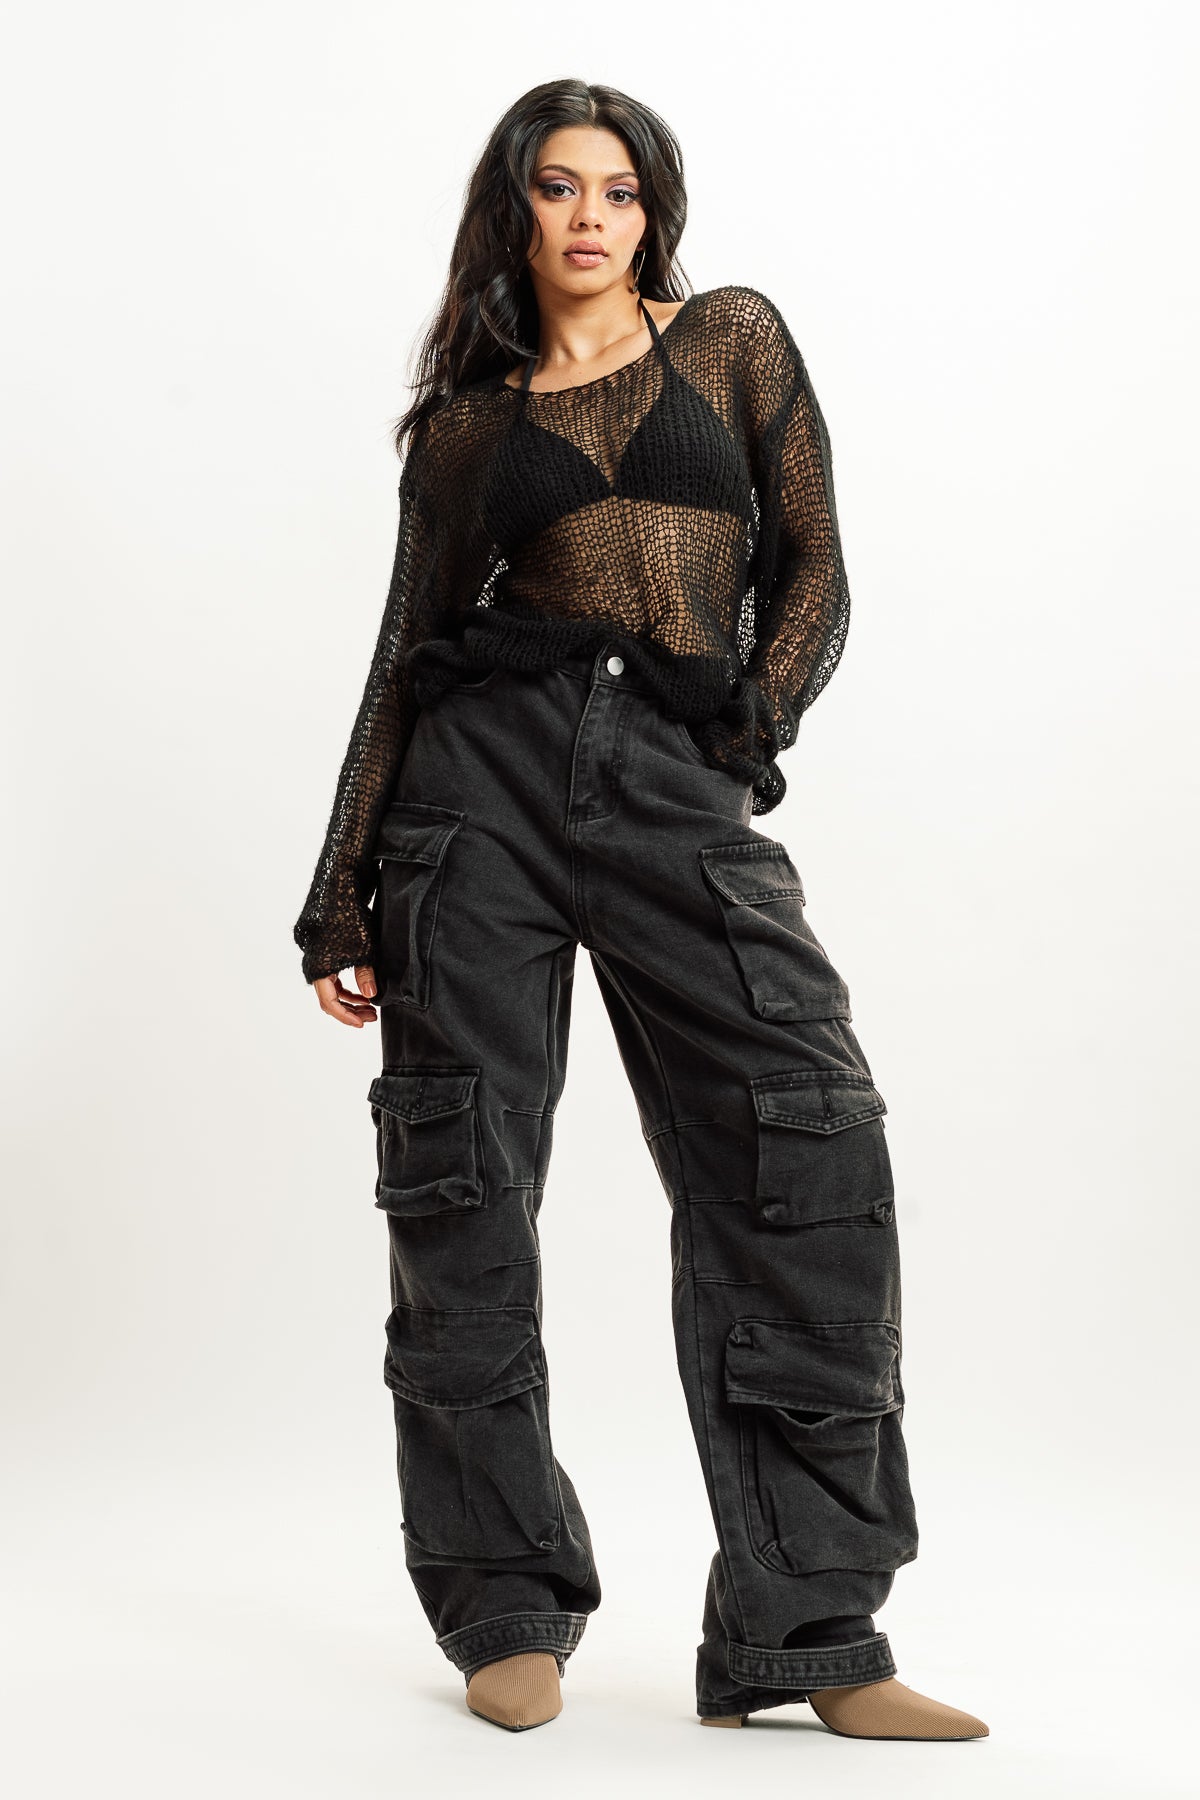 How to style women's cargo pants - Quora